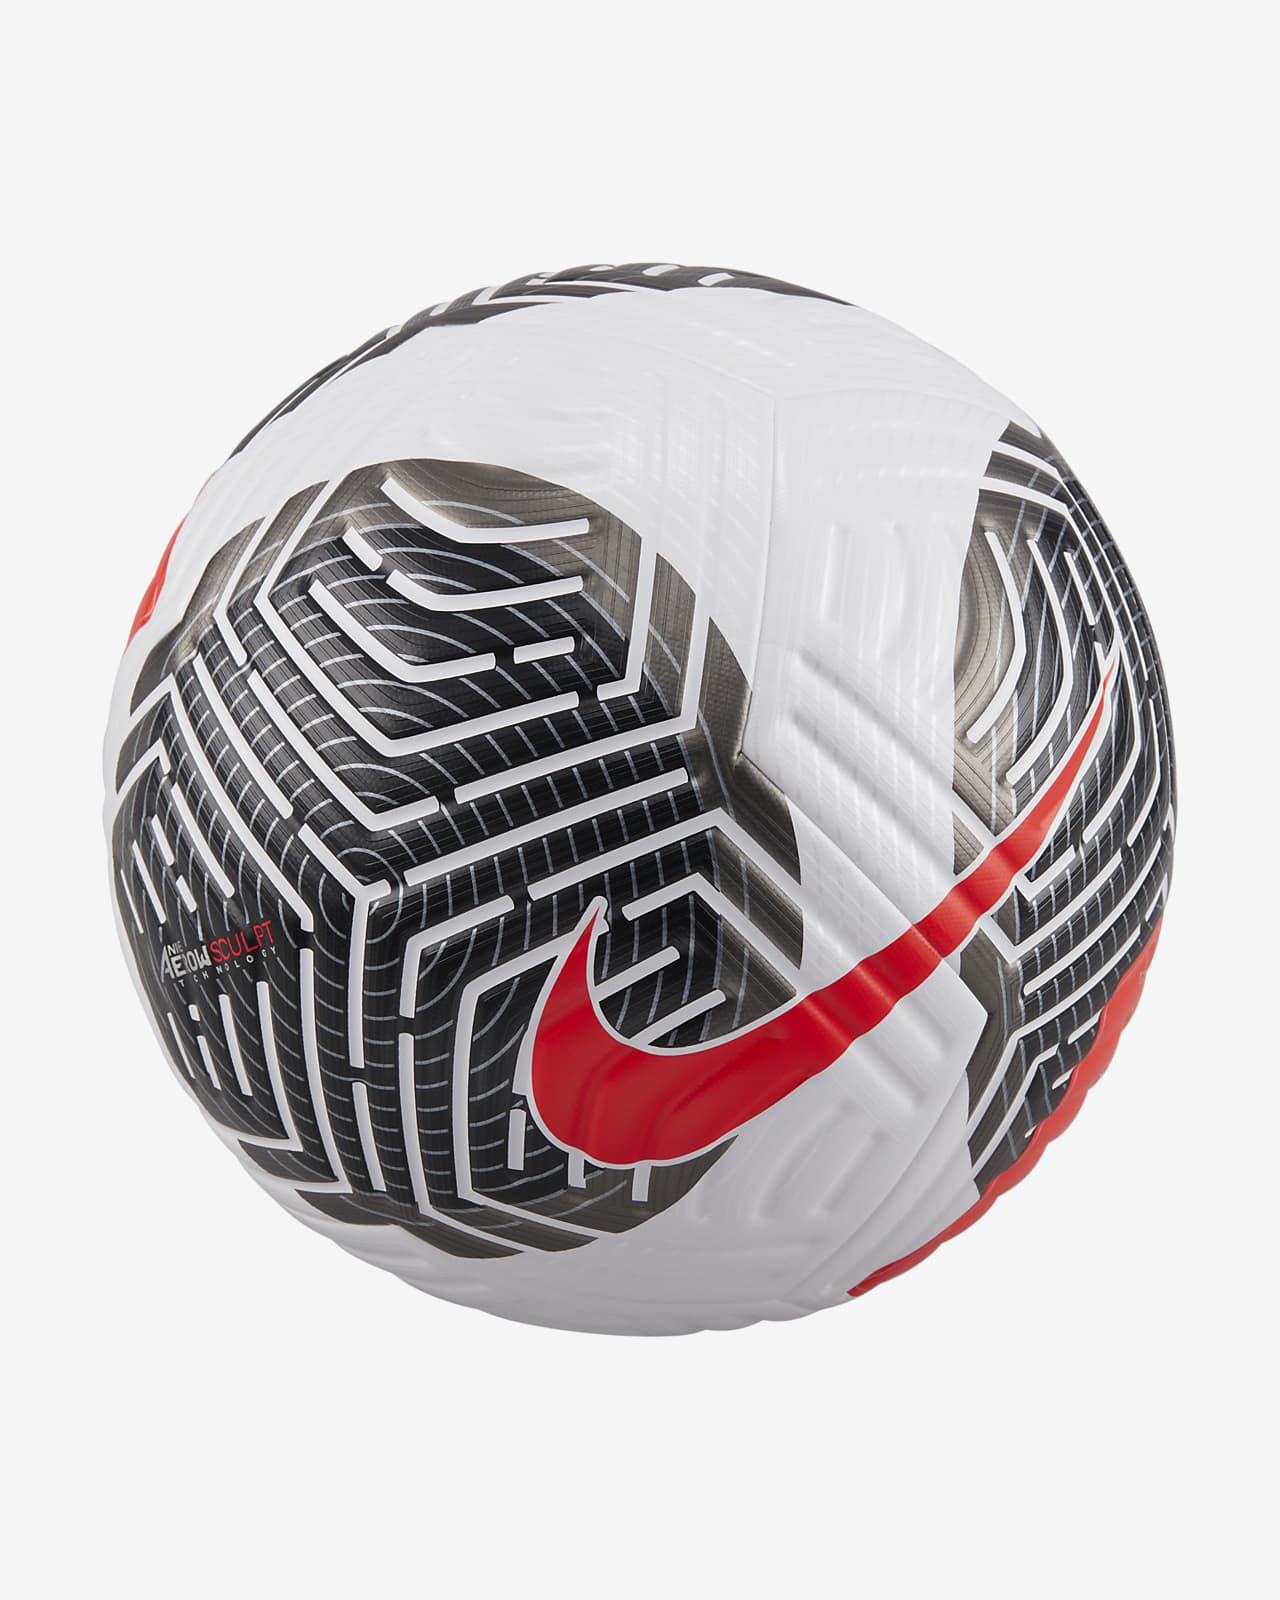 Nike Flight, le ballon Nike qui s'attaque aux problèmes aérodynamiques